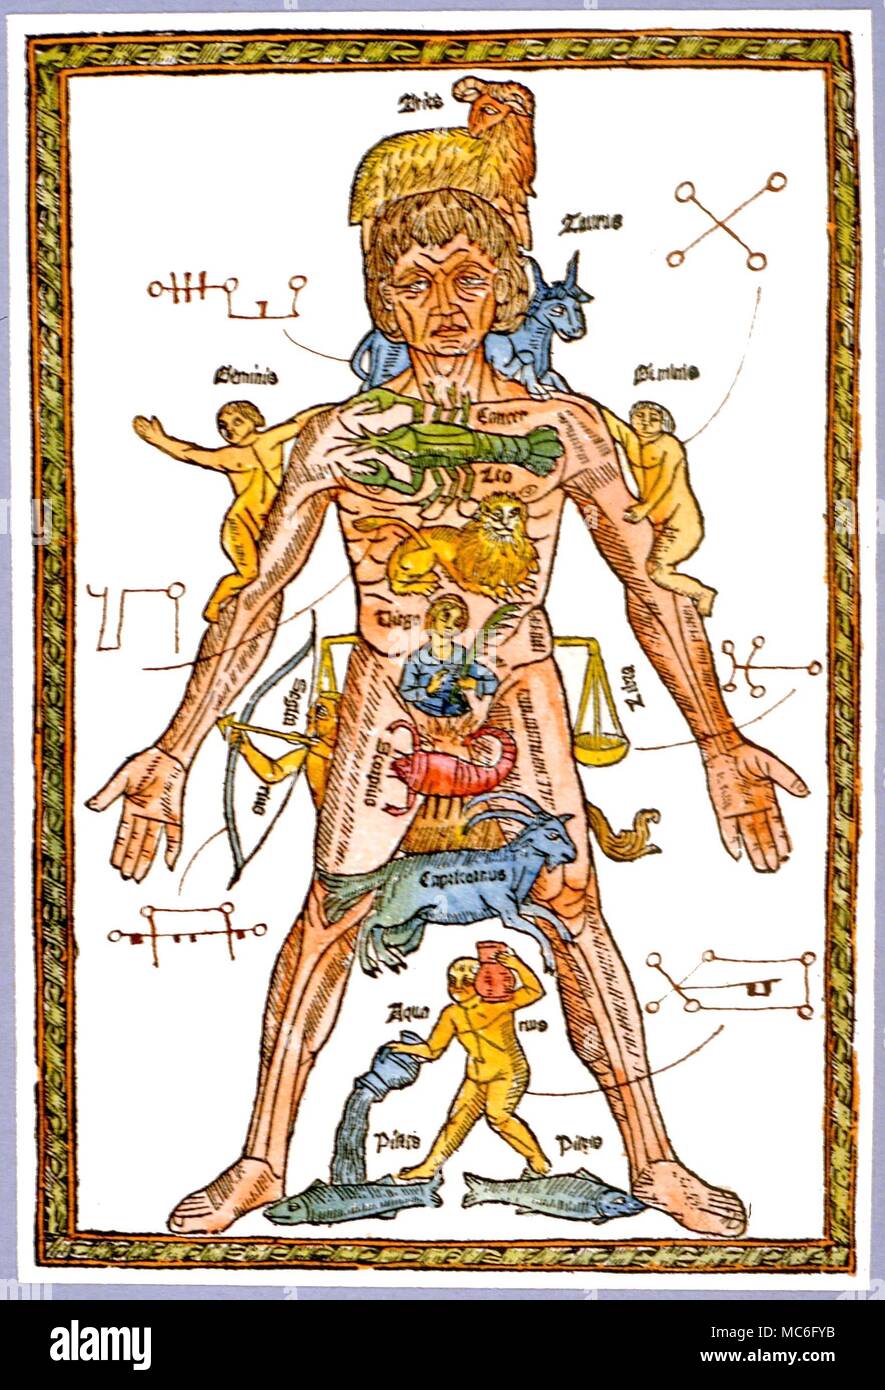 Sigils per le sei stelle che sono collegati con lo zodiaco, disegnati a mano in un woodprint dal 1495 edizione spagnola di "Epilogo en Medicina y Cirugía". Foto Stock